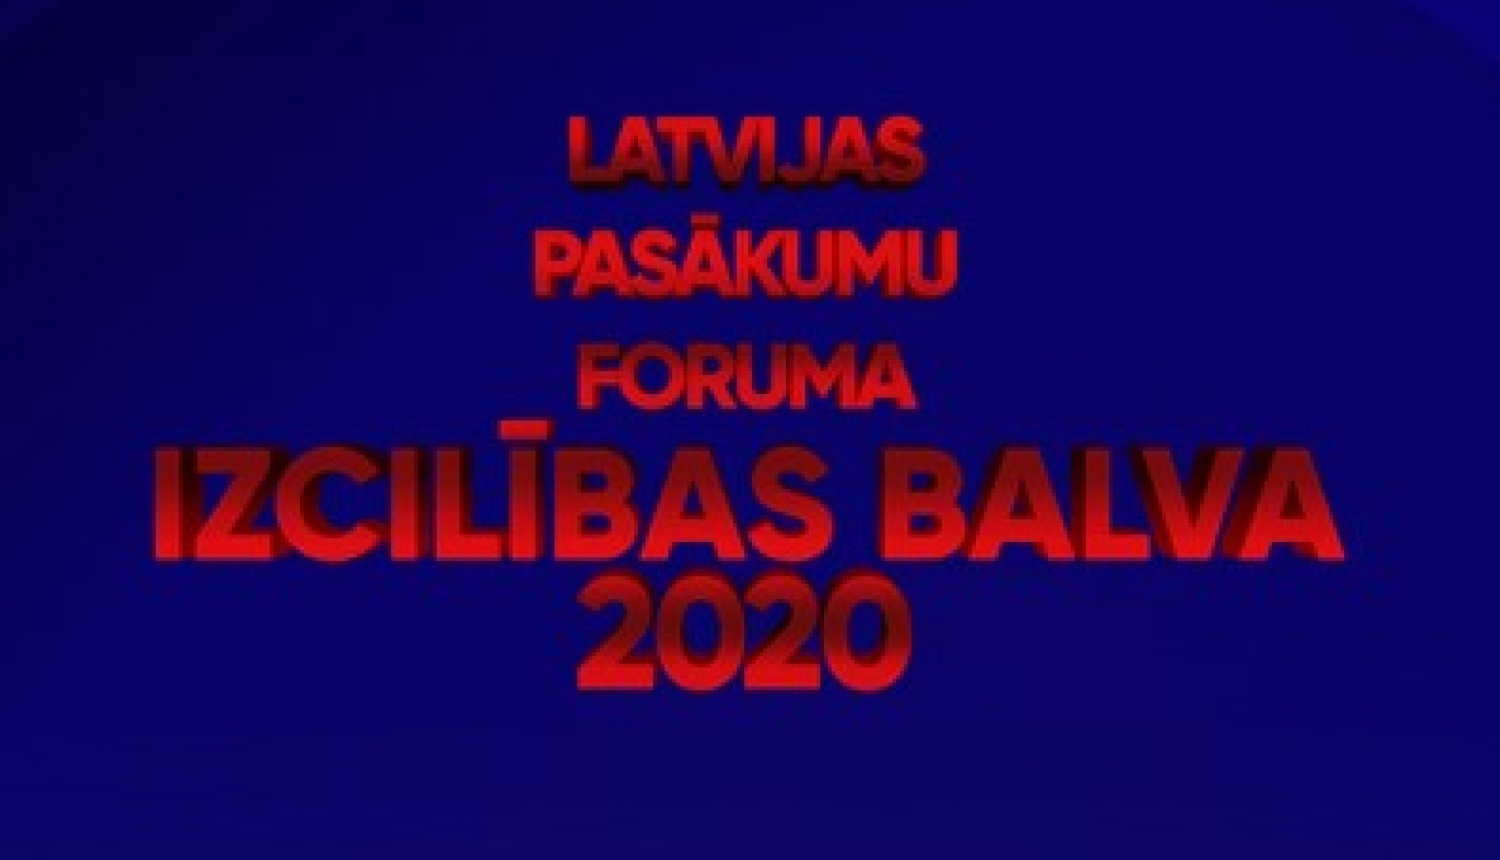 Limbažu novada pašvaldības organizētie pasākumi starp “Latvijas Pasākumu foruma Izcilības balvas” pretendentiem